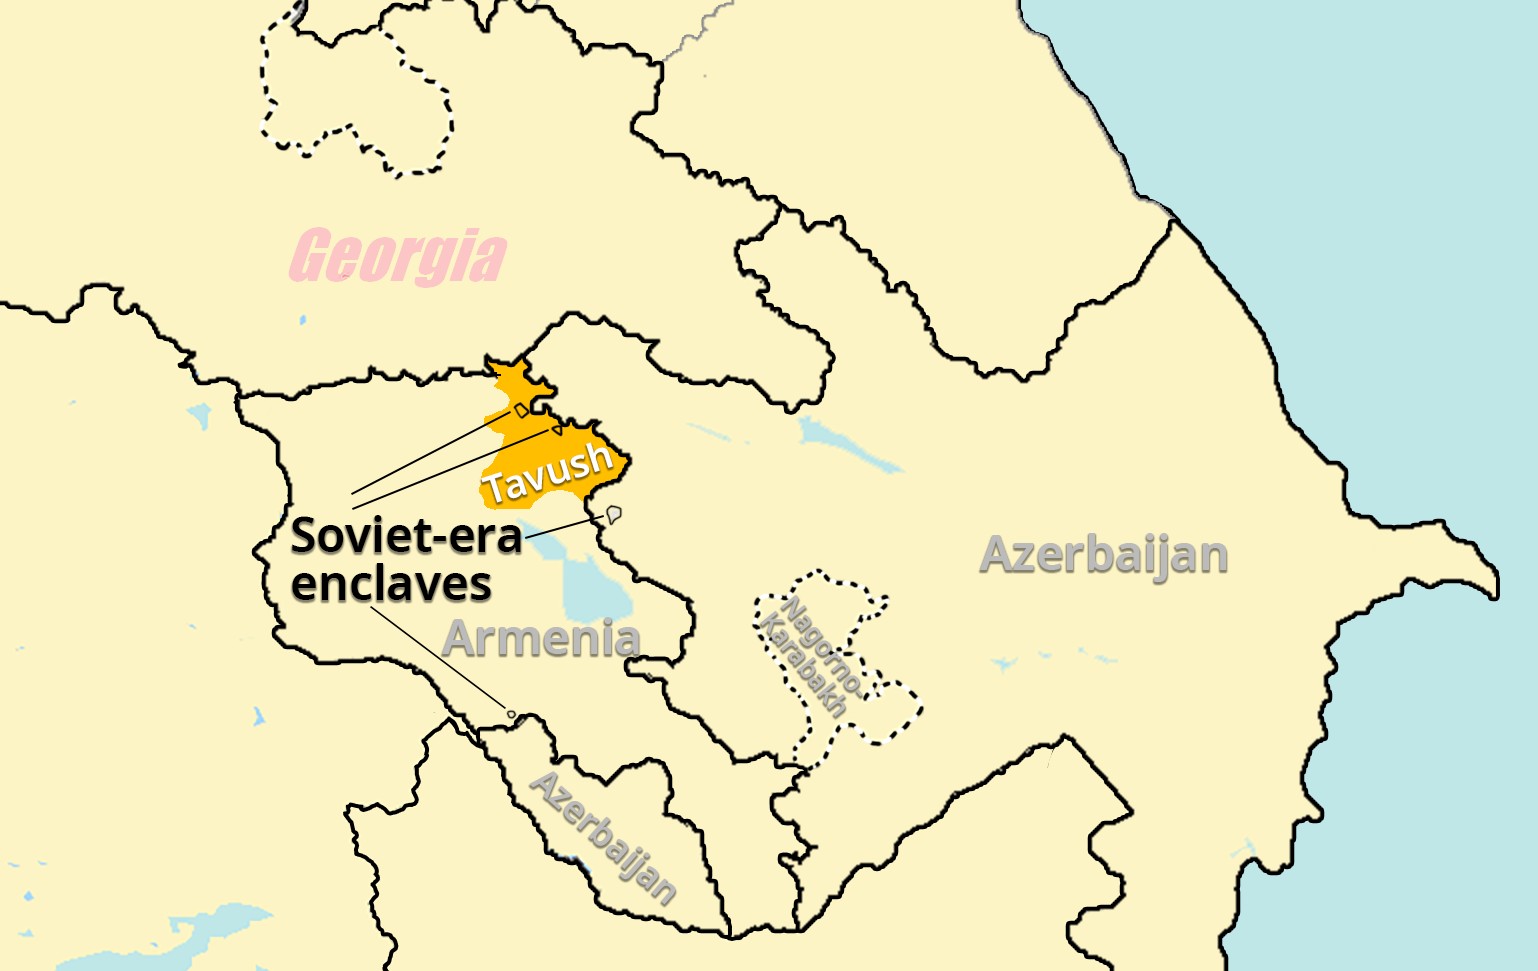 Άλλη μια ήττα για την Αρμενία! Η κυβέρνηση Πασινιάν συμφώνησε για παράδοση εδάφους στο Αζερμπαϊτζάν